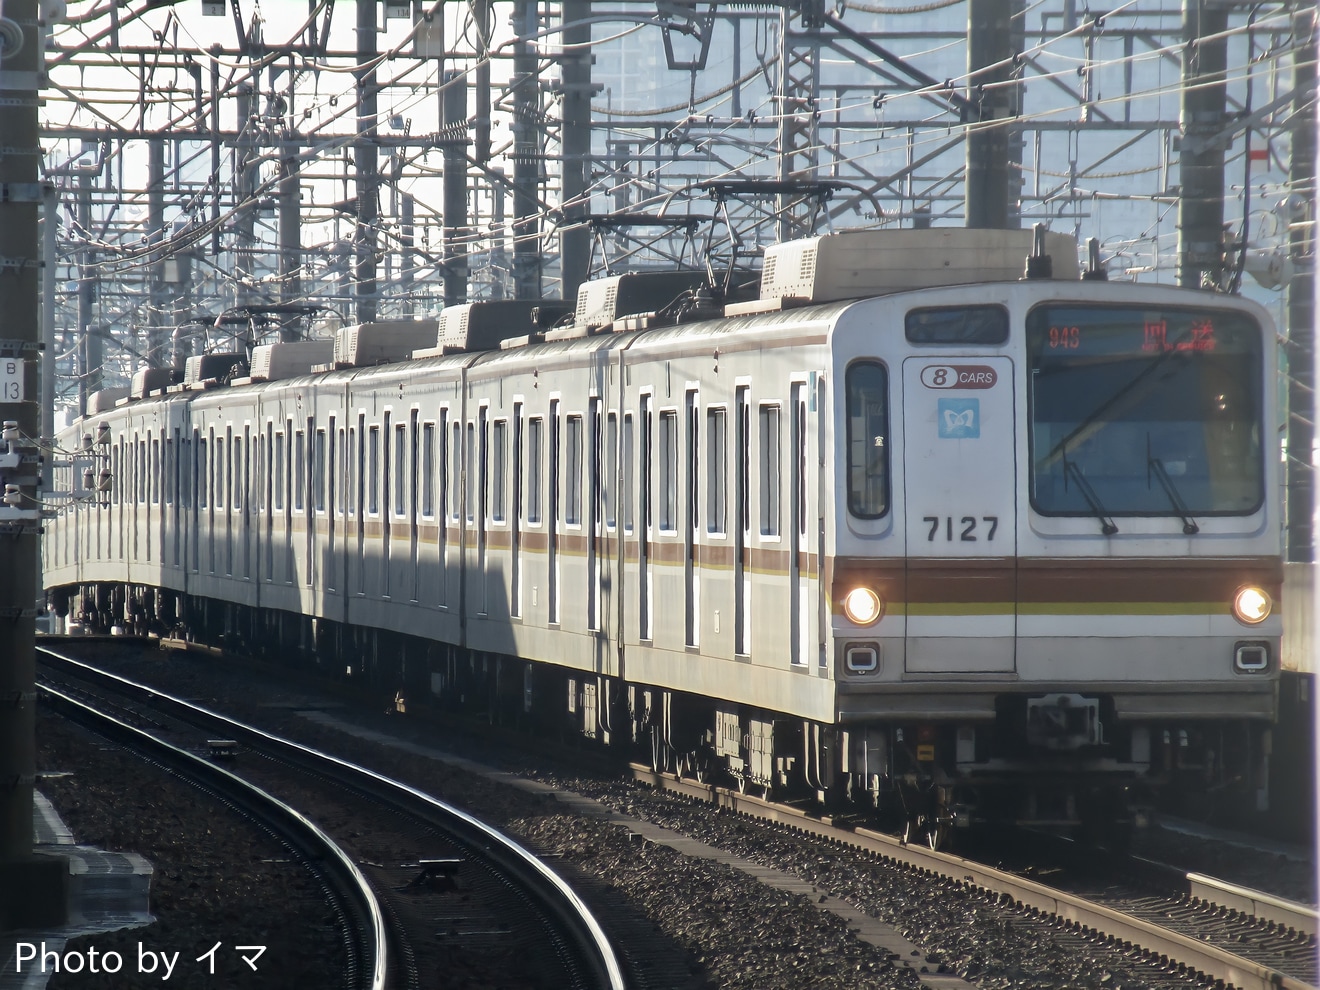 【メトロ】7000系7127F 新木場へ回送(廃車の可能性)の拡大写真